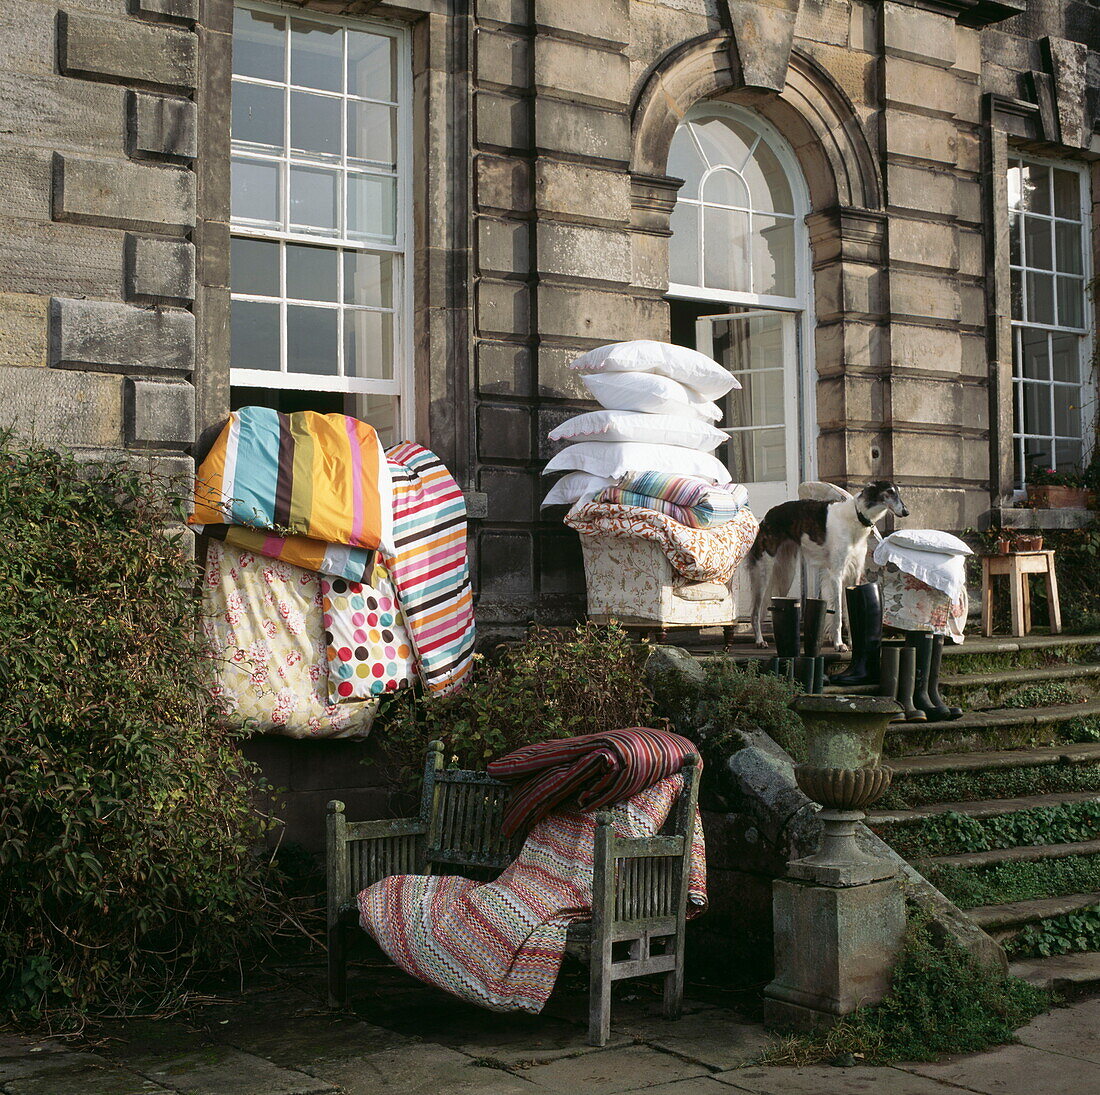 Kissen und Bettdecken werden auf den Stufen eines alten Londoner Hauses gelüftet, UK